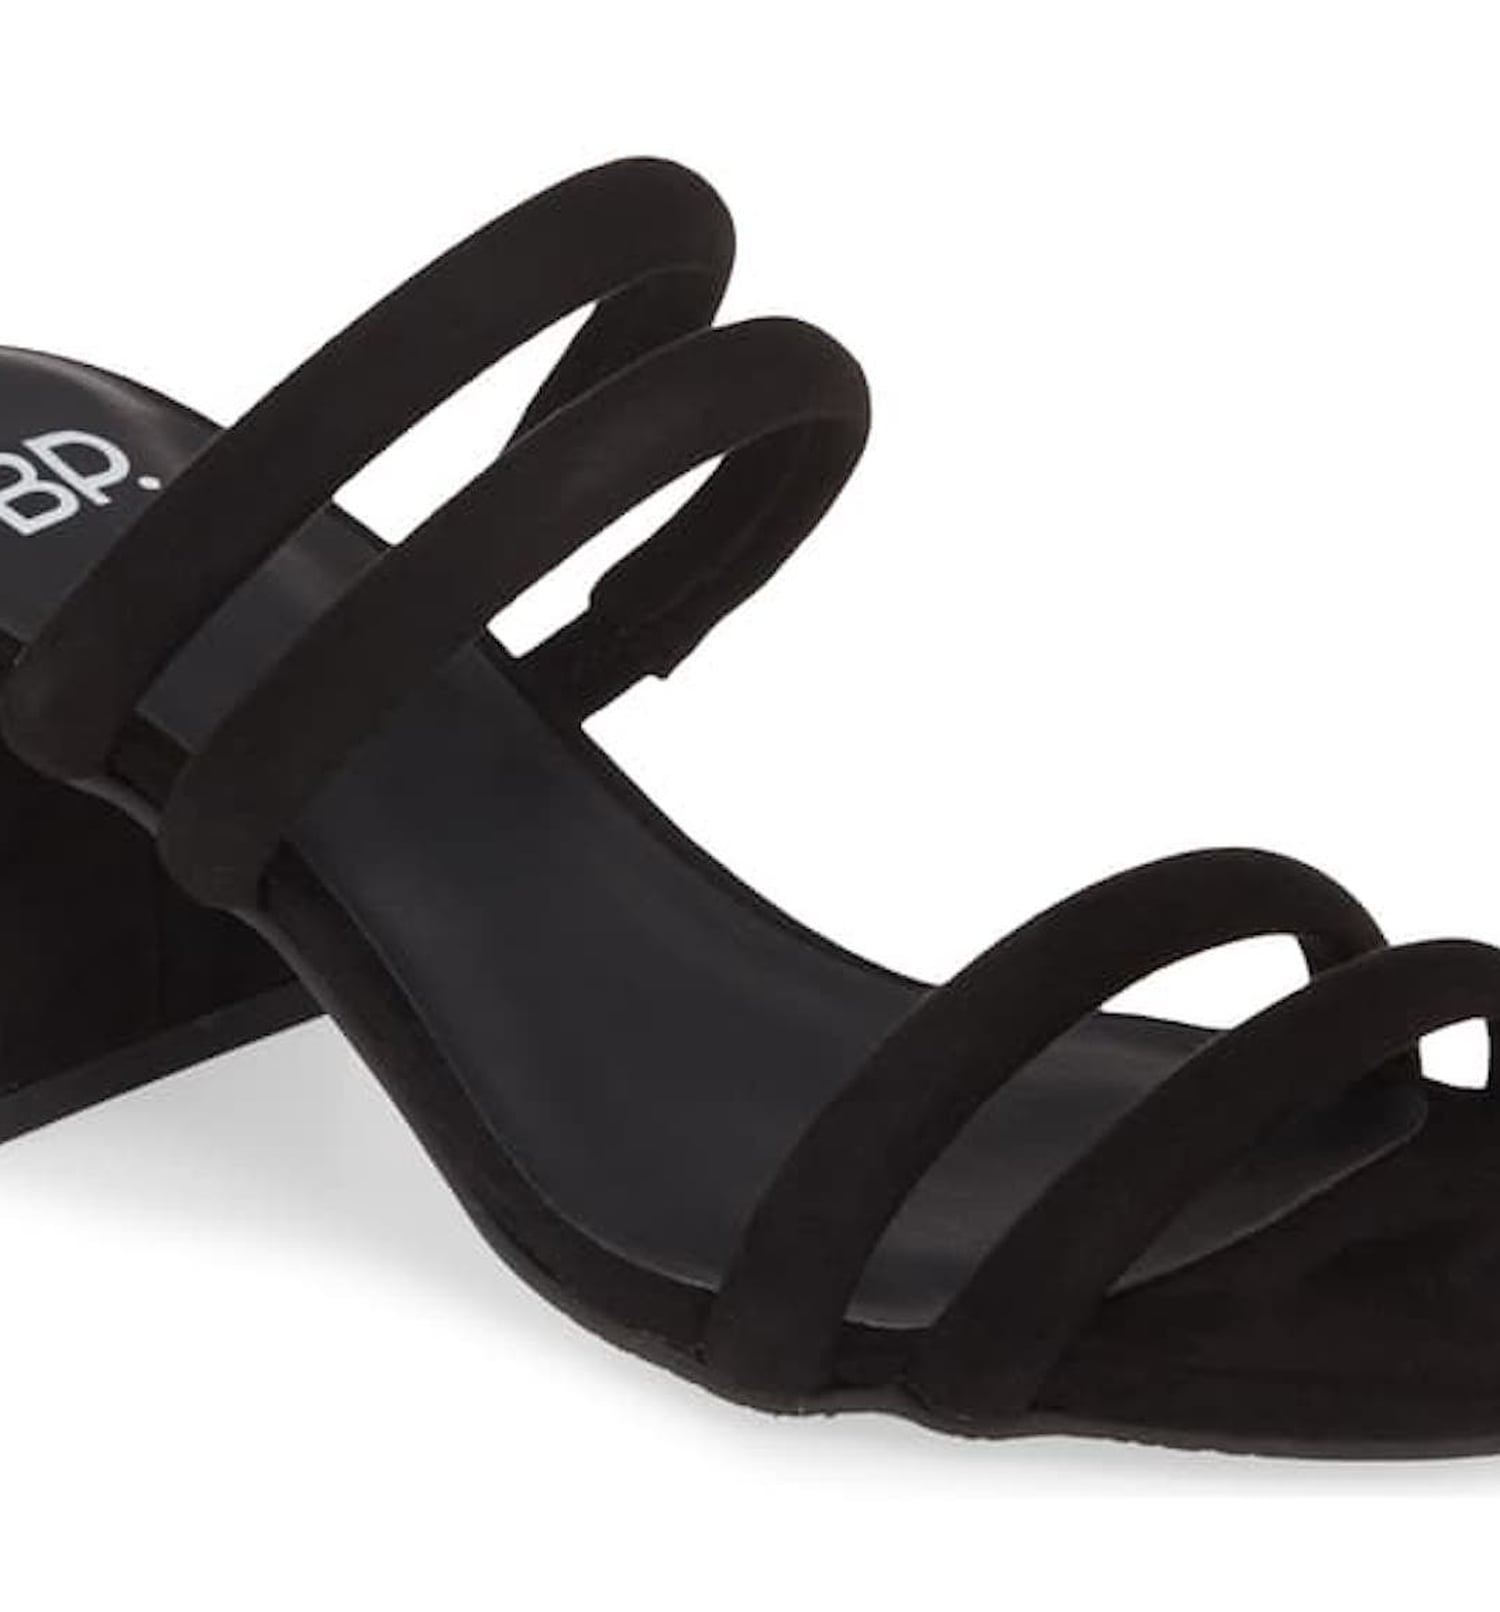 Snag designer sandals for cheap during Nordstrom's Spring Sale